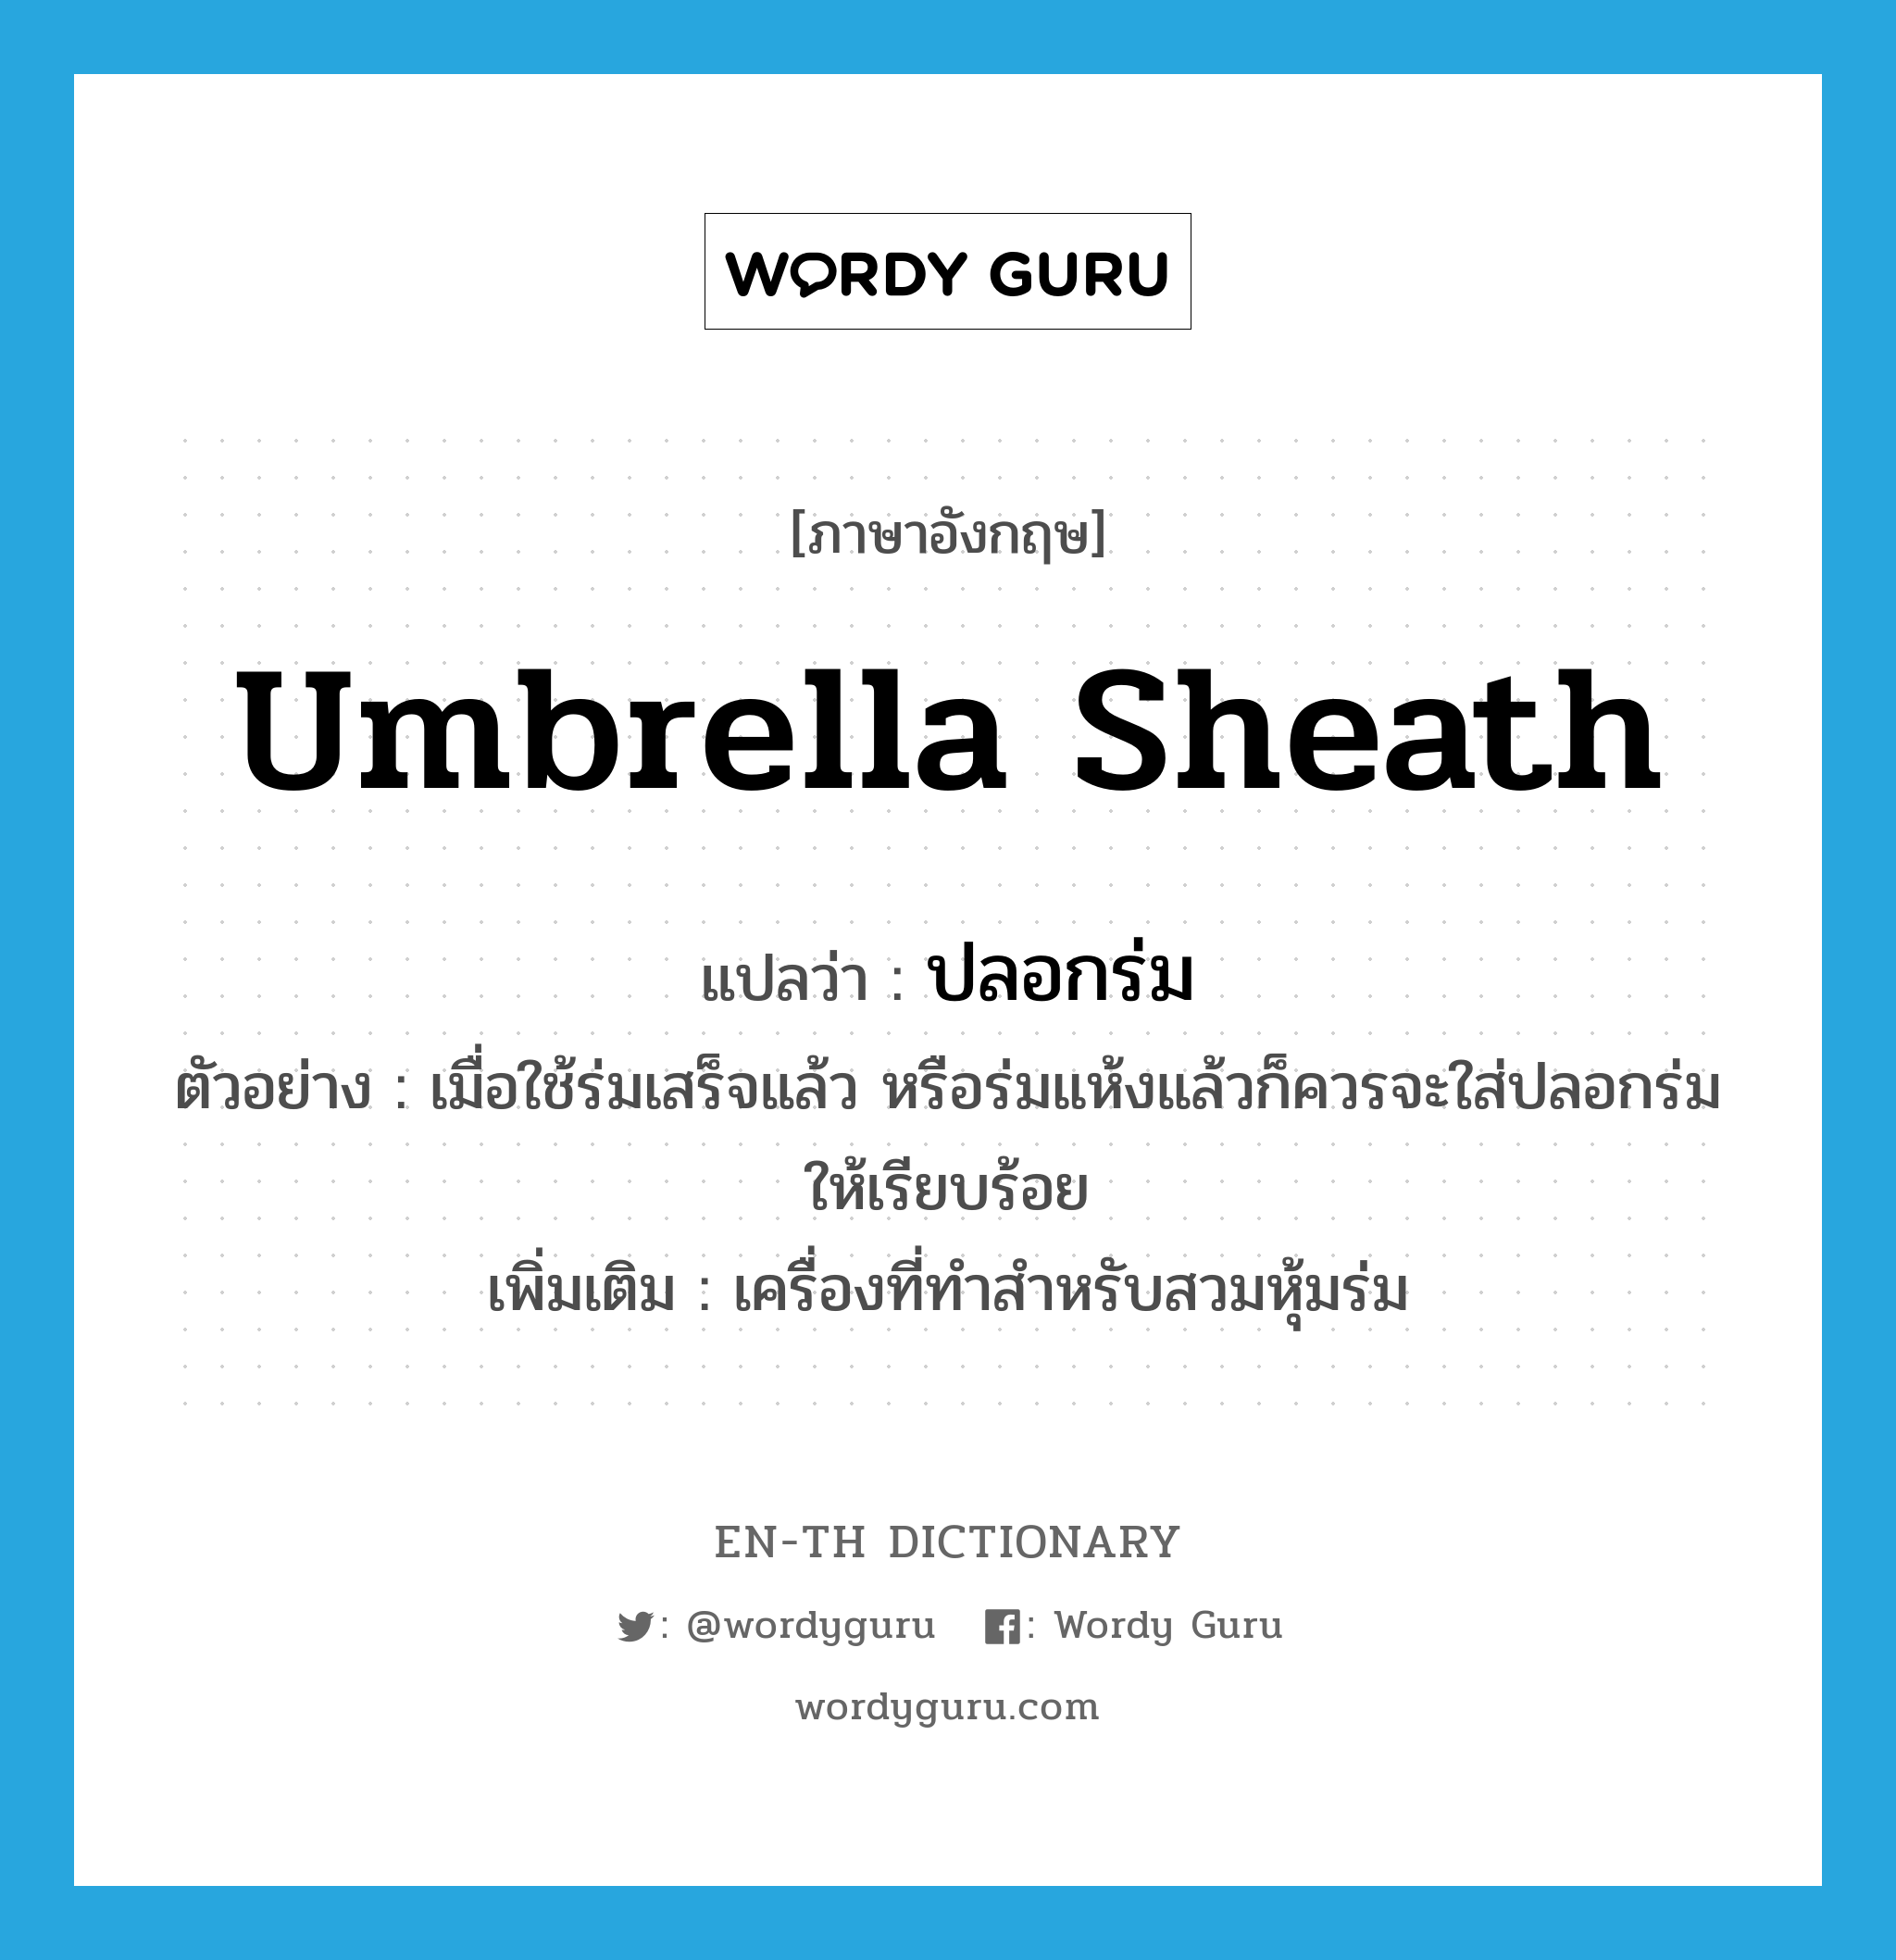 umbrella sheath แปลว่า?, คำศัพท์ภาษาอังกฤษ umbrella sheath แปลว่า ปลอกร่ม ประเภท N ตัวอย่าง เมื่อใช้ร่มเสร็จแล้ว หรือร่มแห้งแล้วก็ควรจะใส่ปลอกร่มให้เรียบร้อย เพิ่มเติม เครื่องที่ทำสำหรับสวมหุ้มร่ม หมวด N